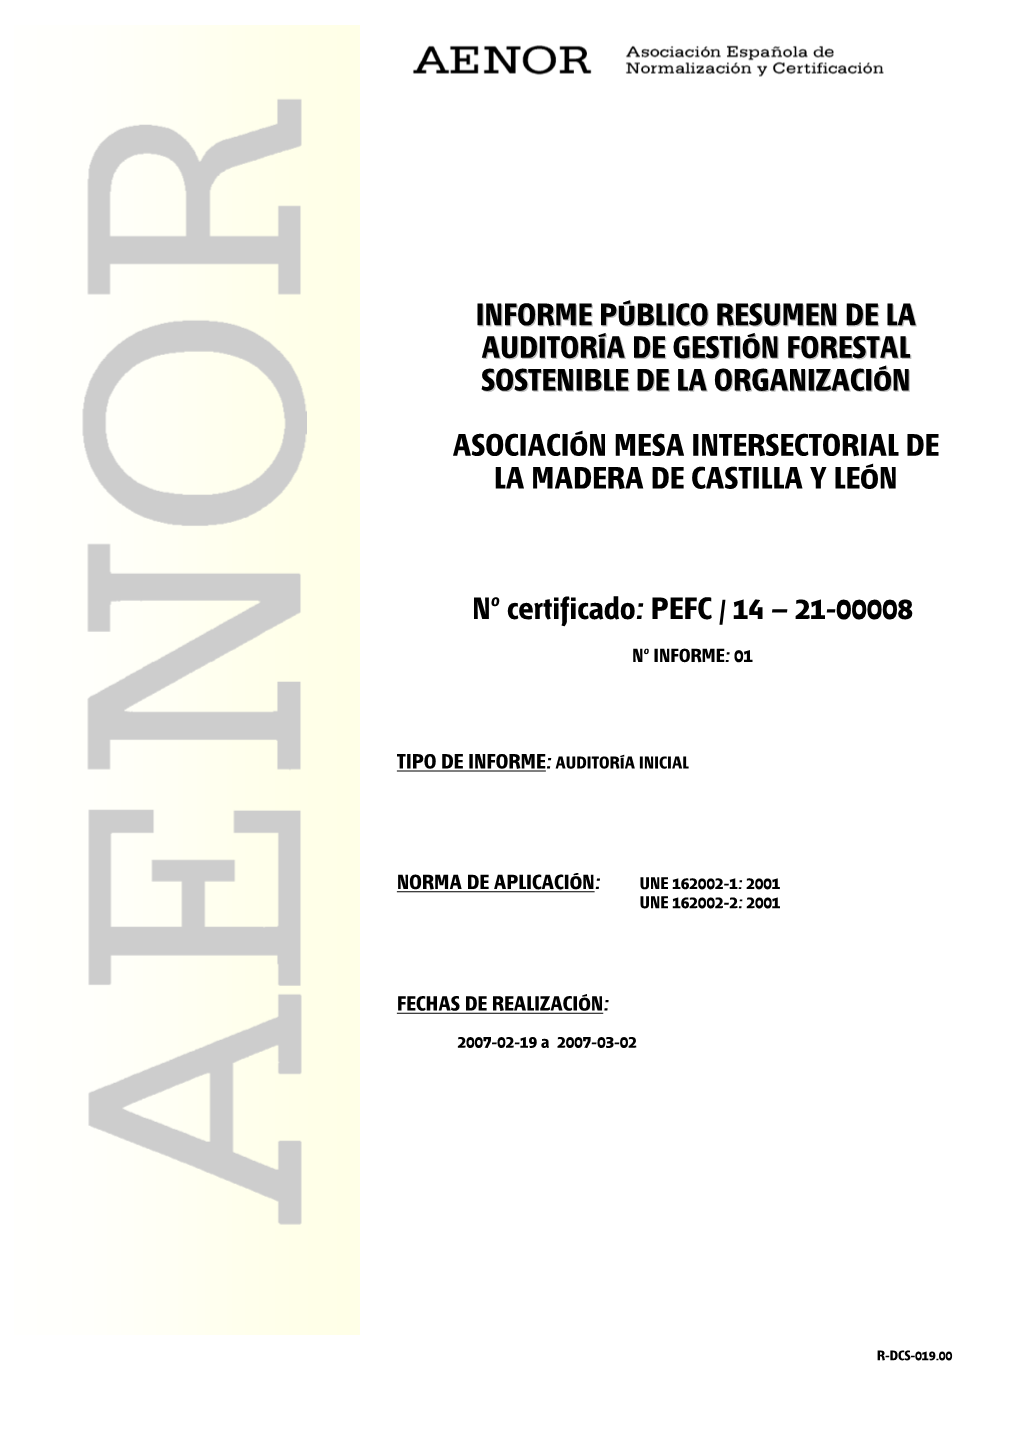 Nº Certificado: PEFC / 14 – 21-00008 INFORME PÚBLICO RESUMEN DE